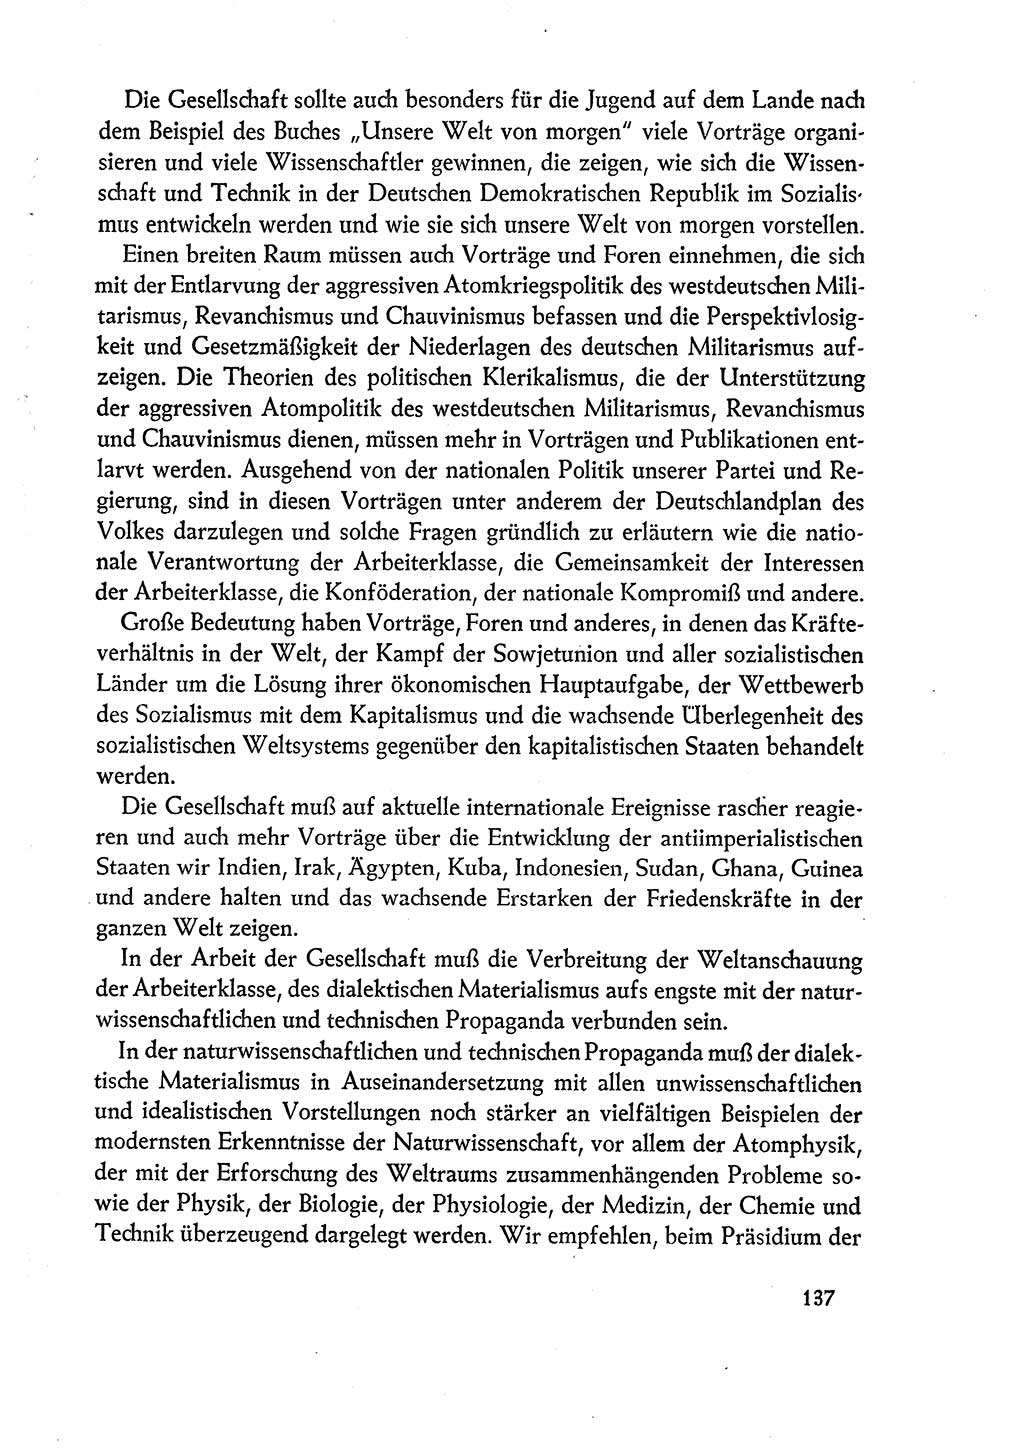 Dokumente der Sozialistischen Einheitspartei Deutschlands (SED) [Deutsche Demokratische Republik (DDR)] 1960-1961, Seite 137 (Dok. SED DDR 1960-1961, S. 137)